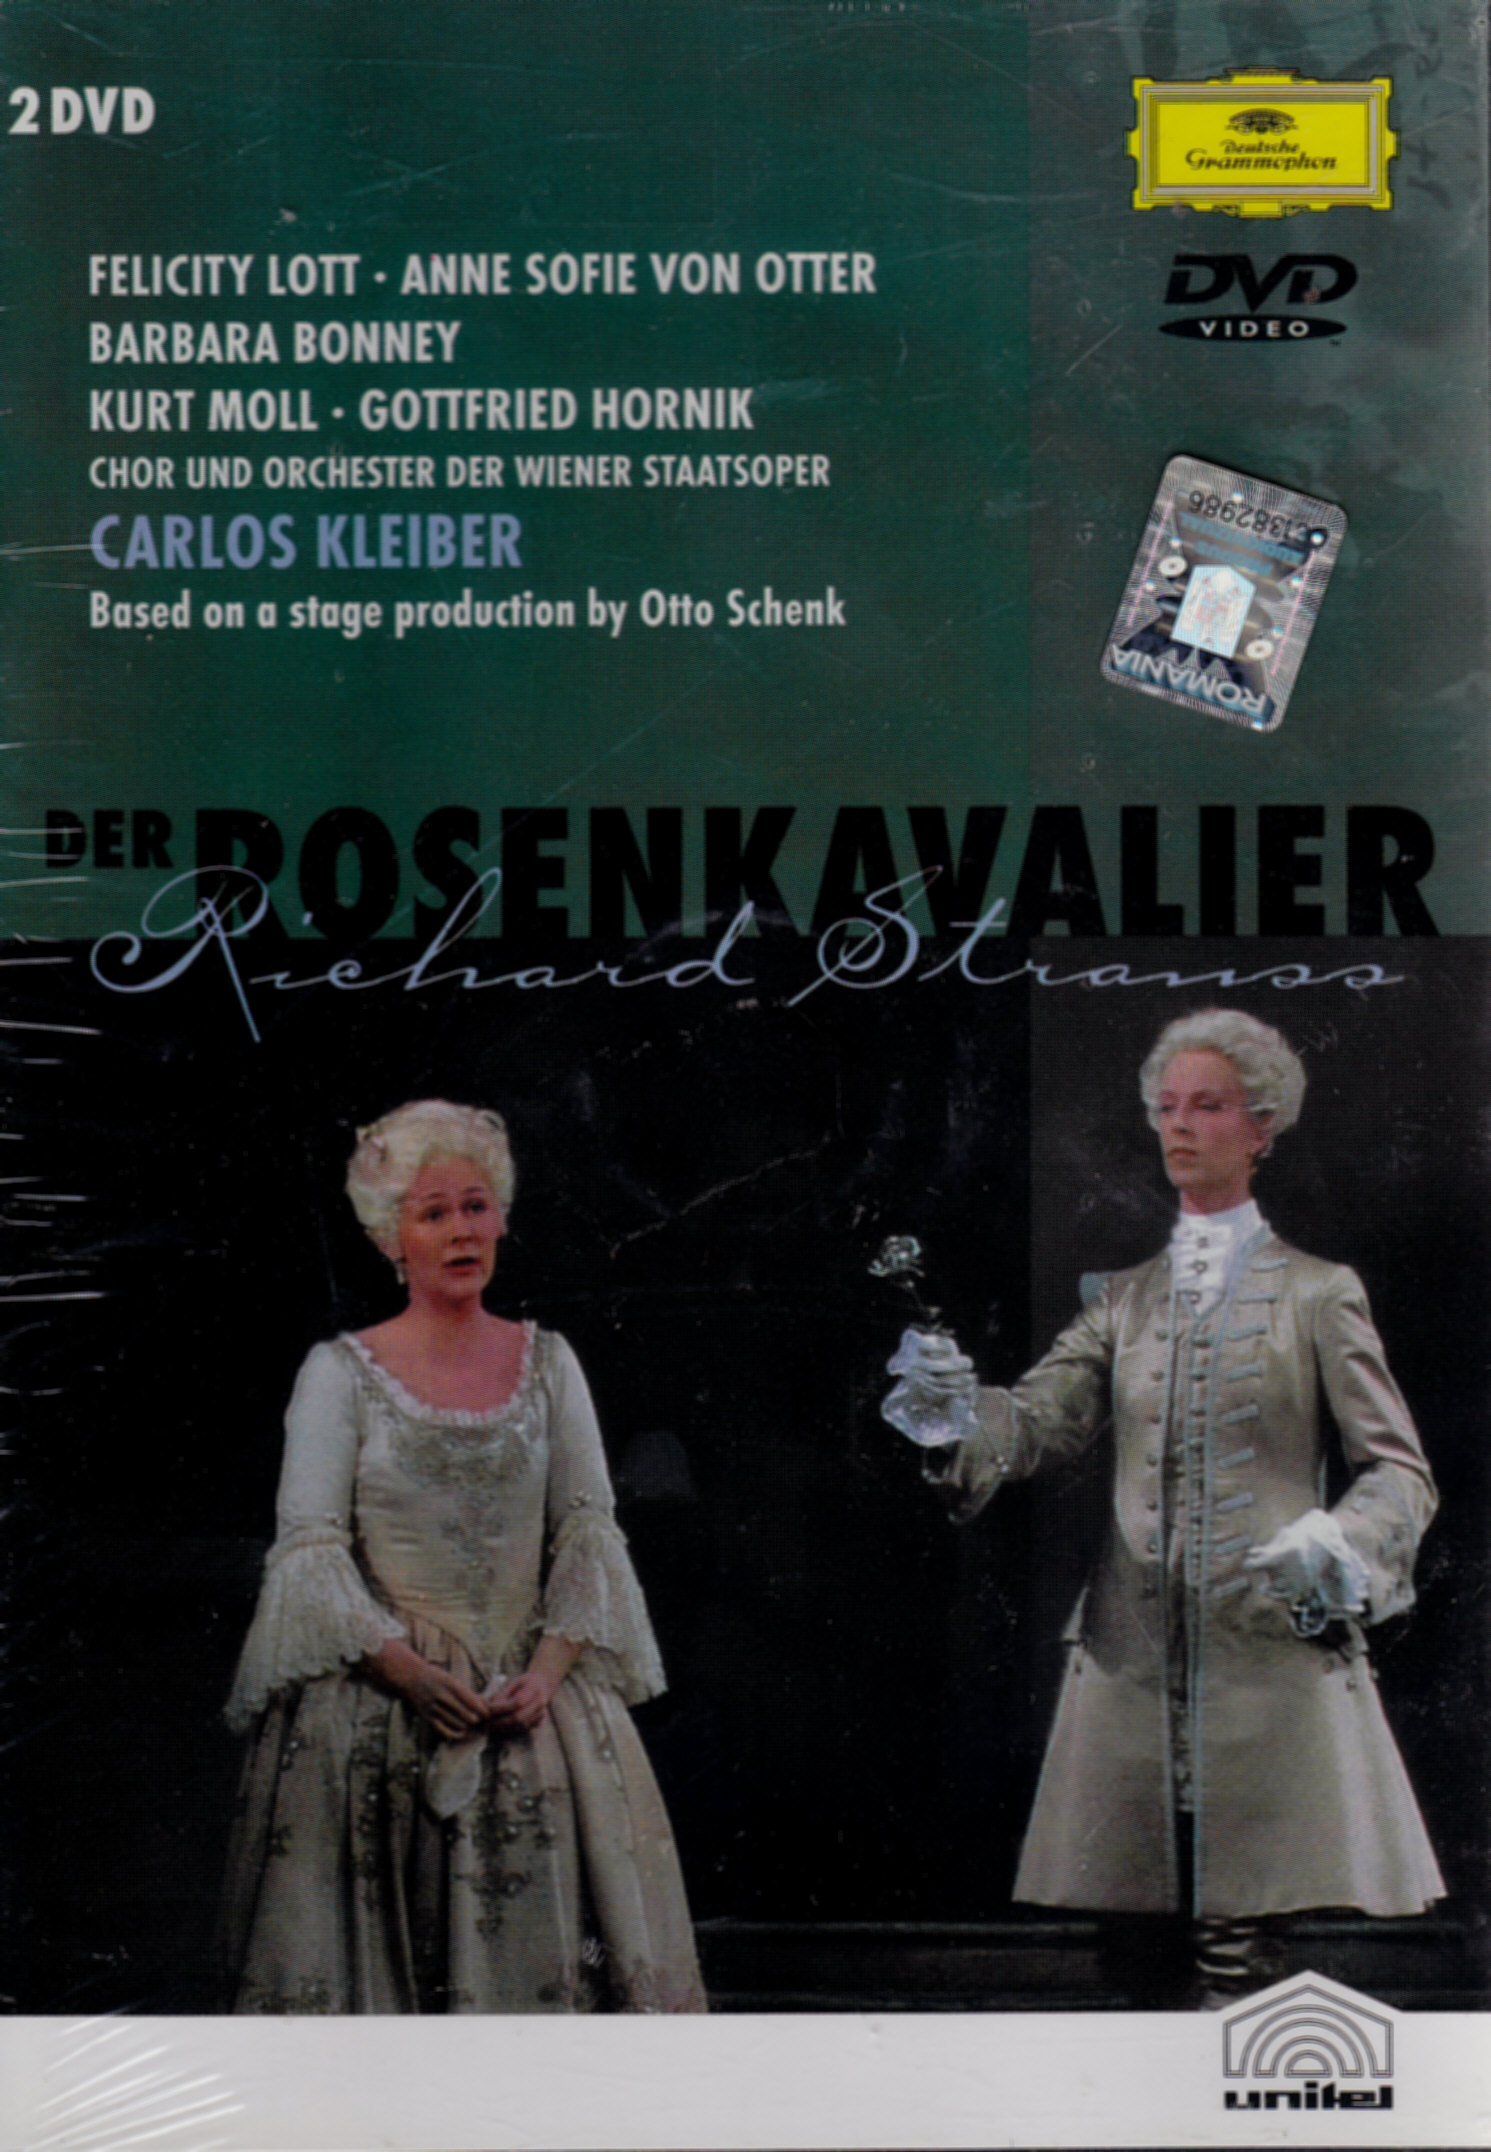 2dvd Strauss - Der Rosenkavalier - Carlos Kleiber